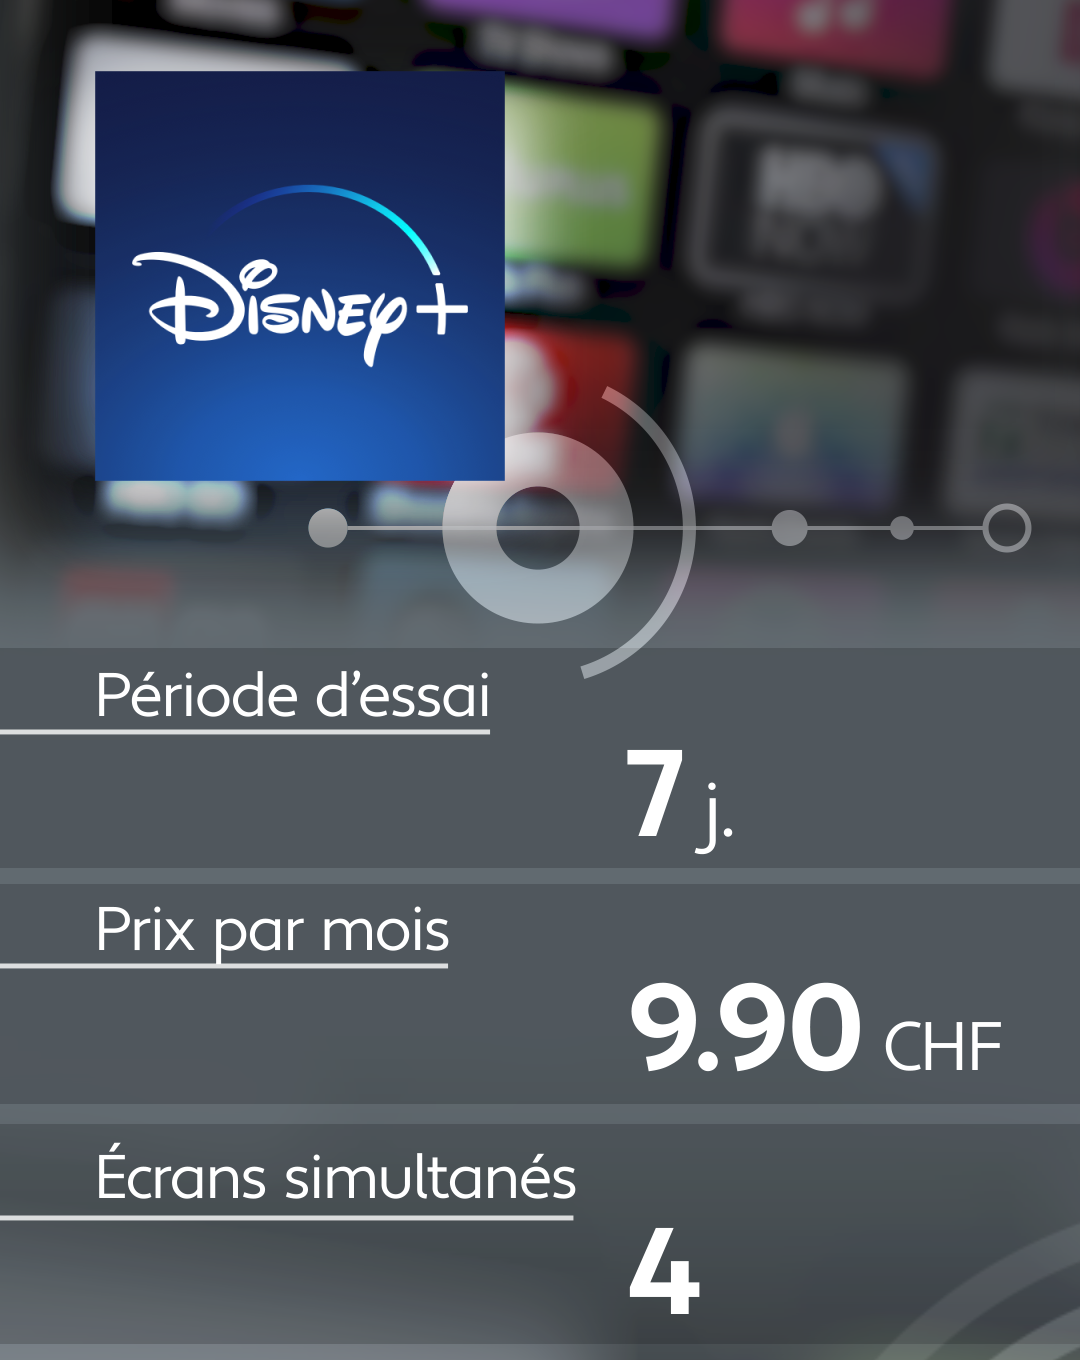 Conditions d'abonnement de quelques plateformes de streaming: Disney +.